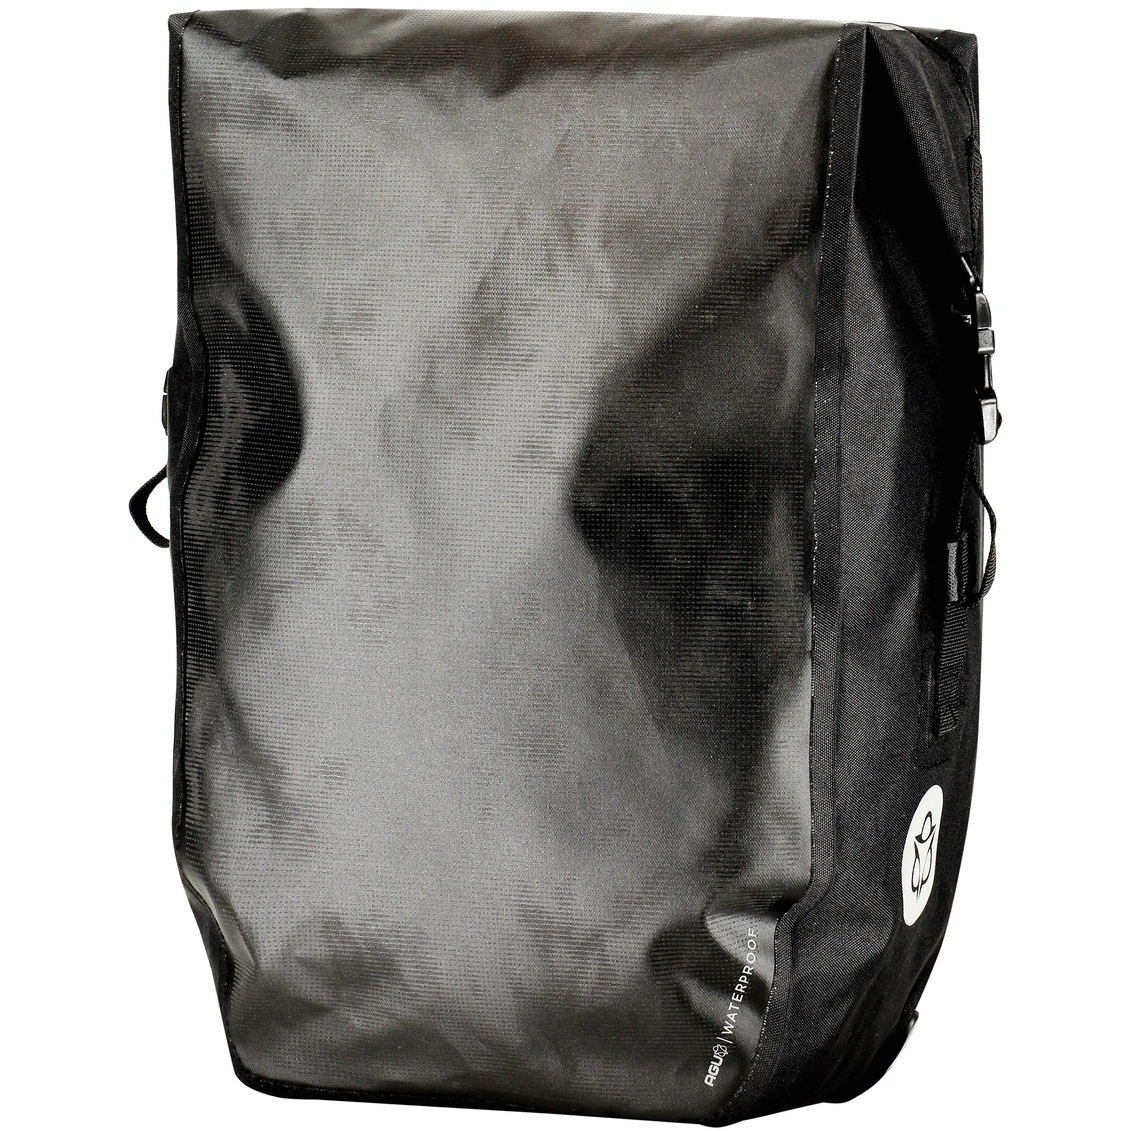 Produktbild von AGU Shelter Clean Gepäckträgertasche - Medium - 17L - hi-vis reflection